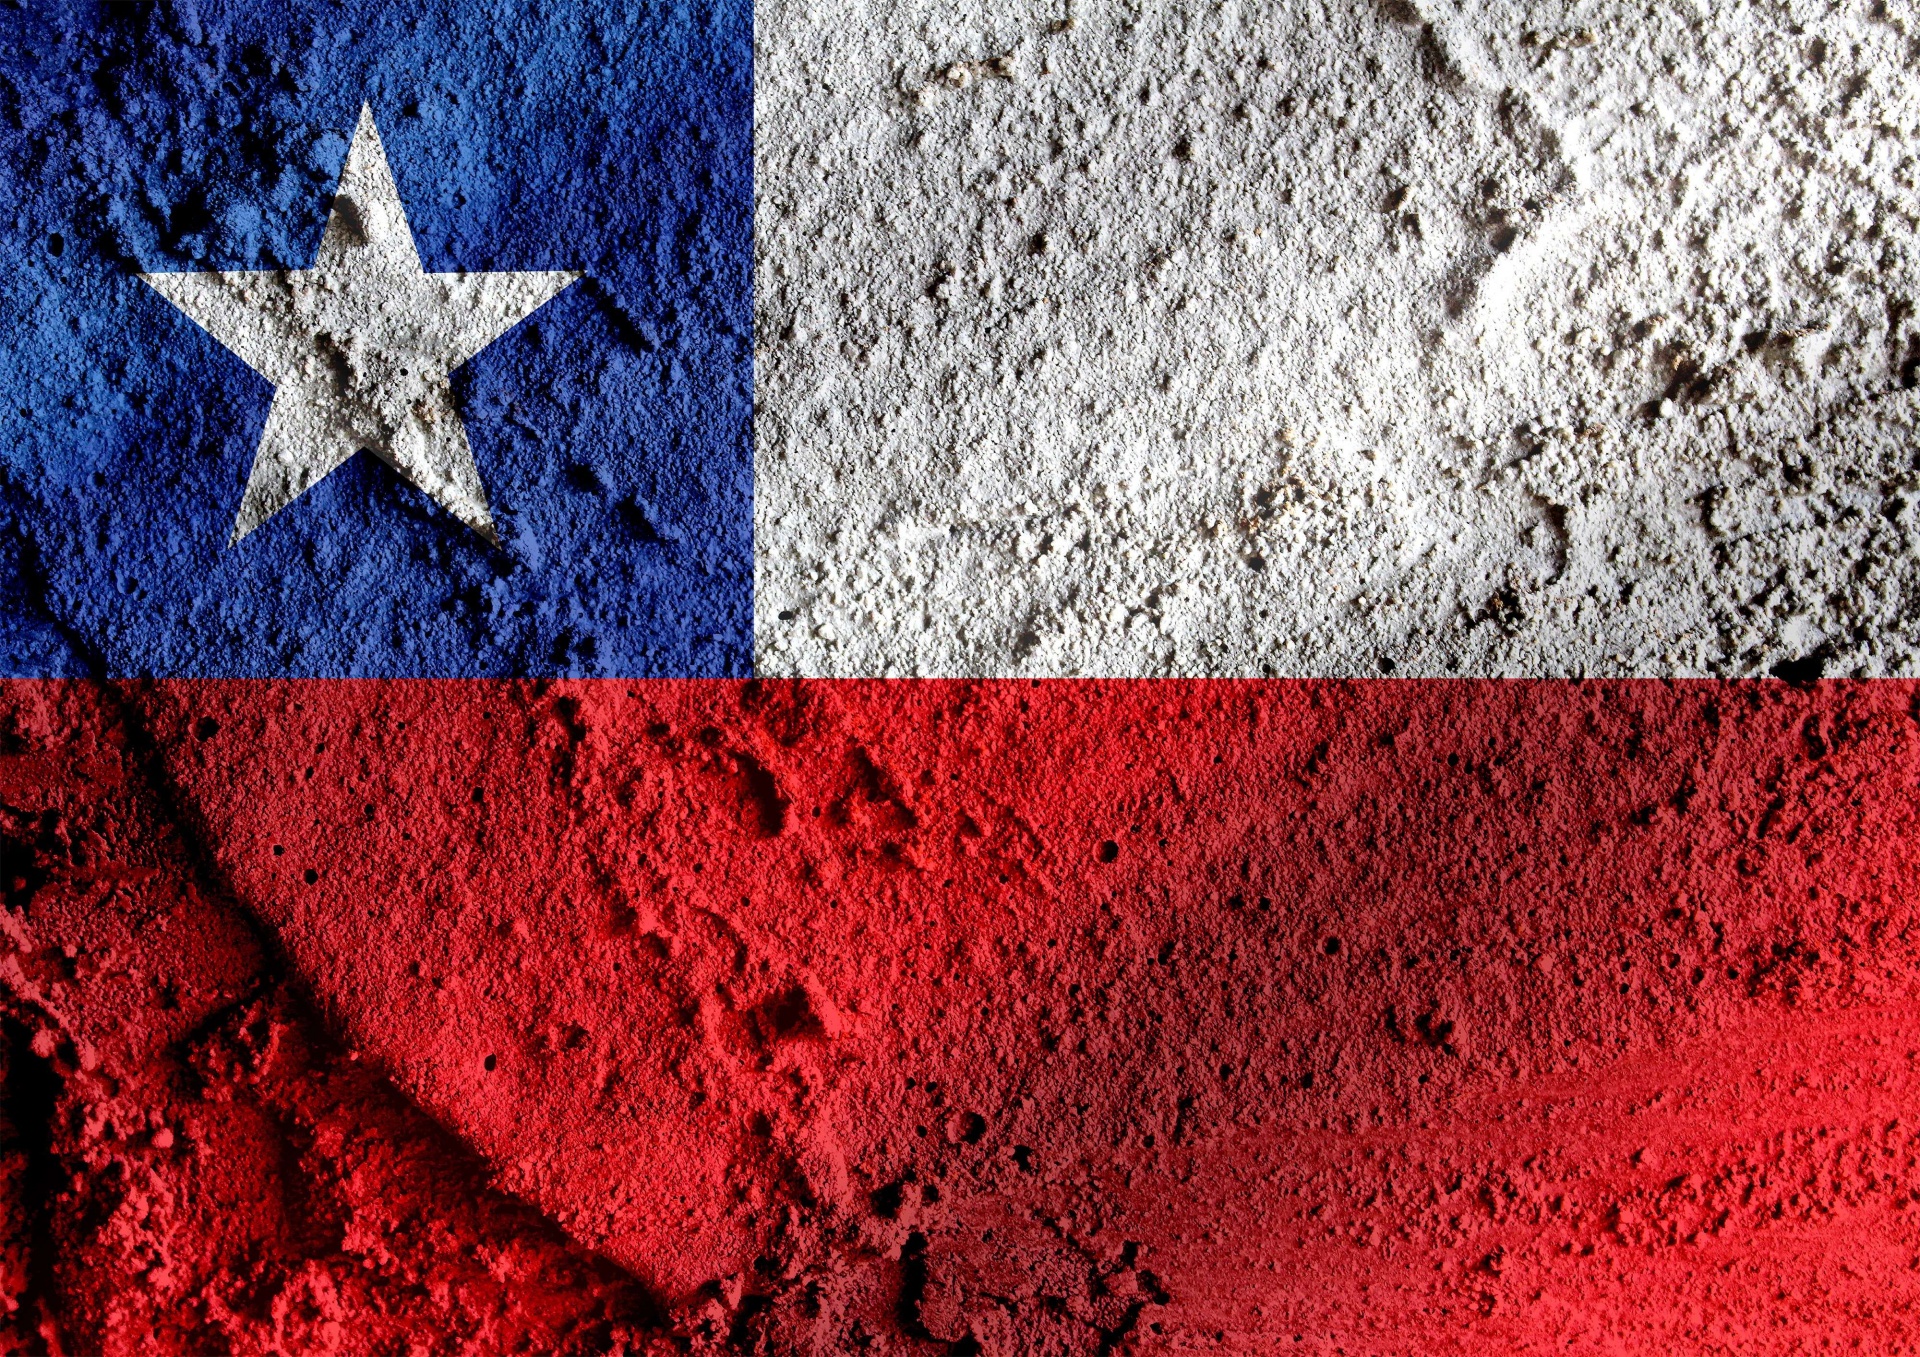 チリのテーマの国旗 無料画像 Public Domain Pictures